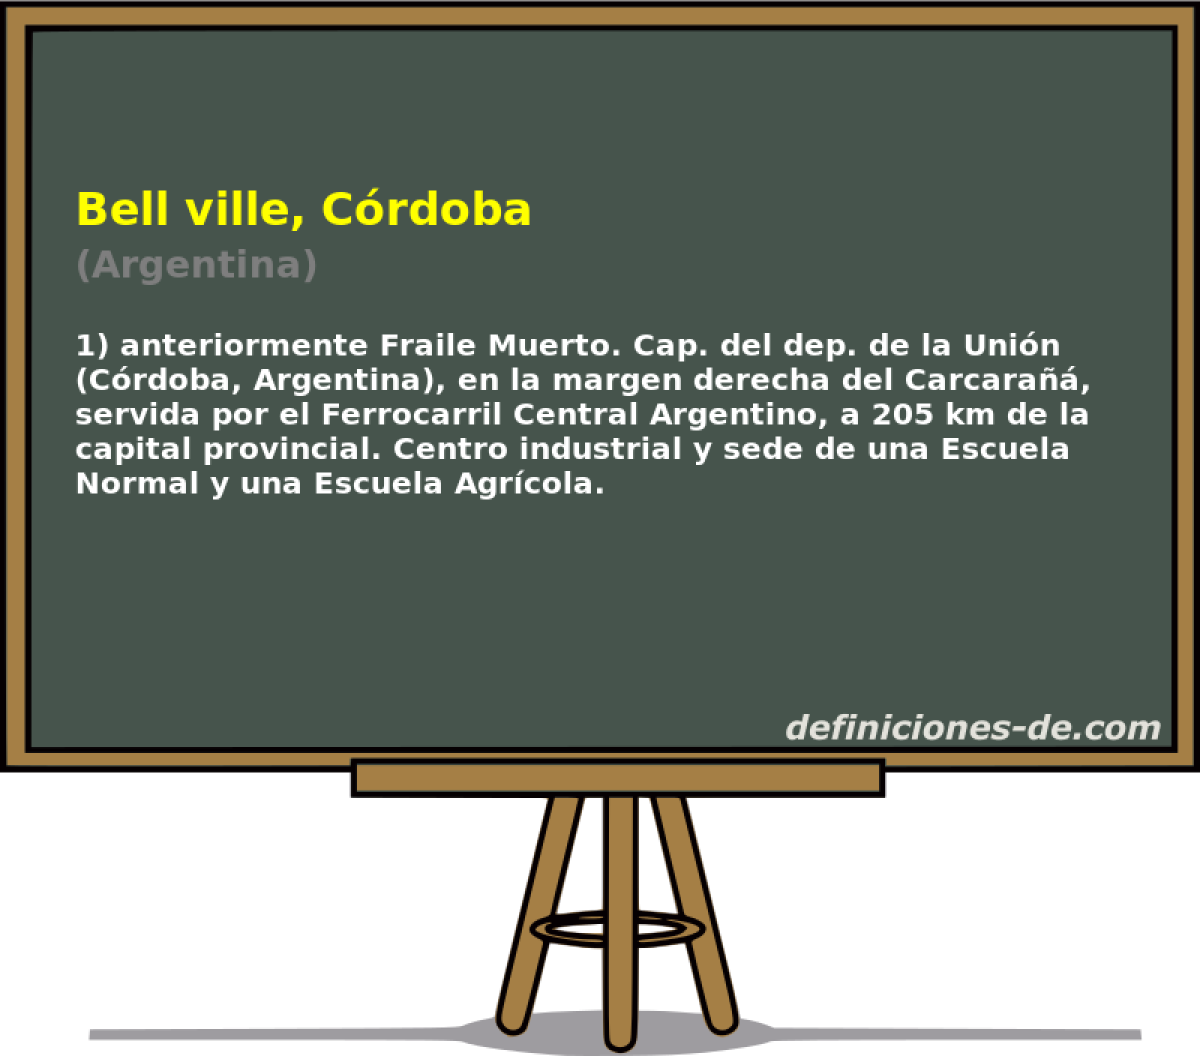 Bell ville, Crdoba (Argentina)